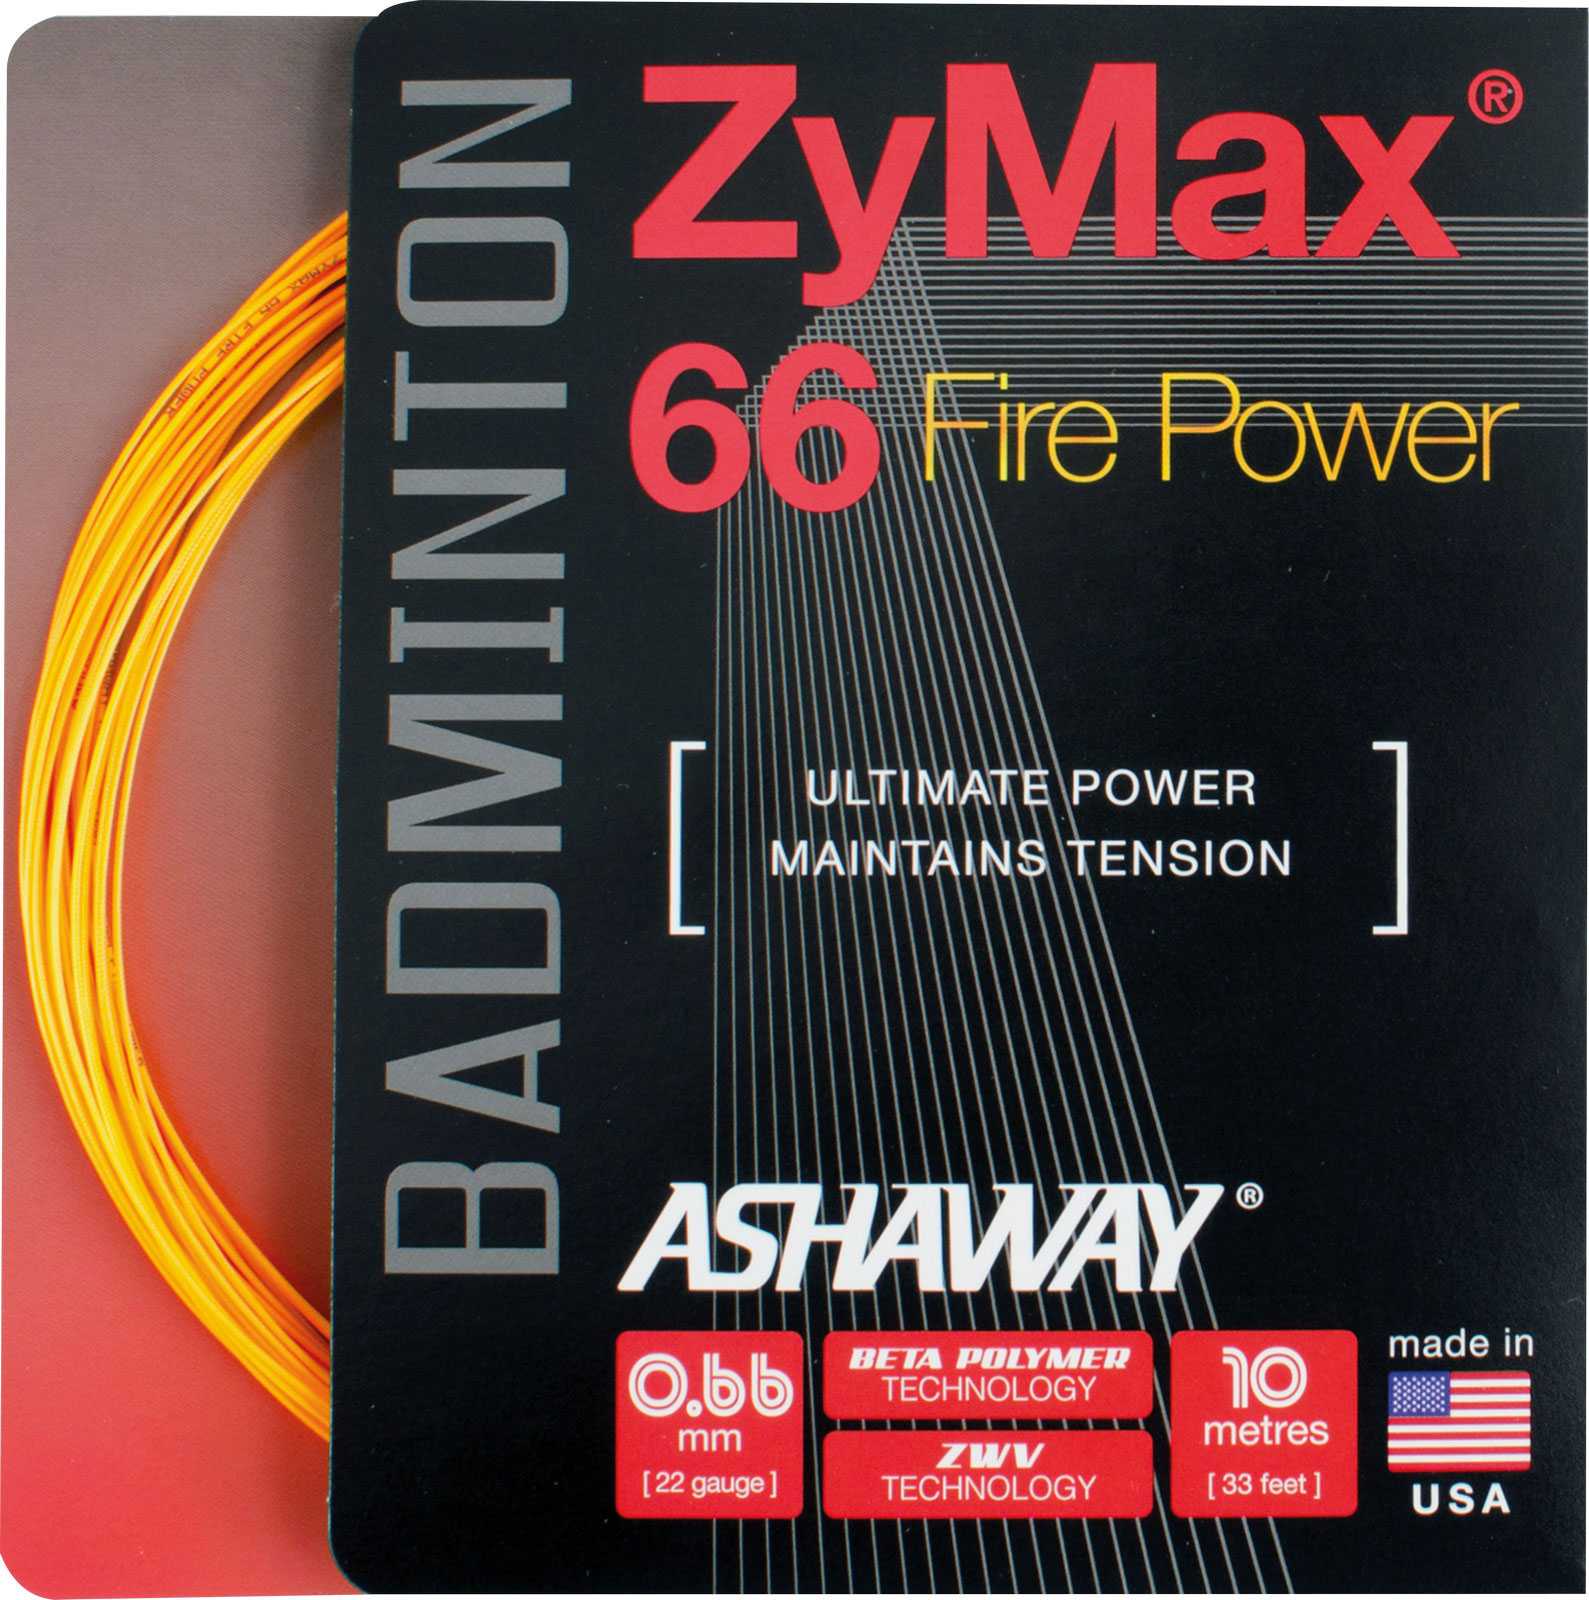 ASHAWAY Zymax 66 Fire Power